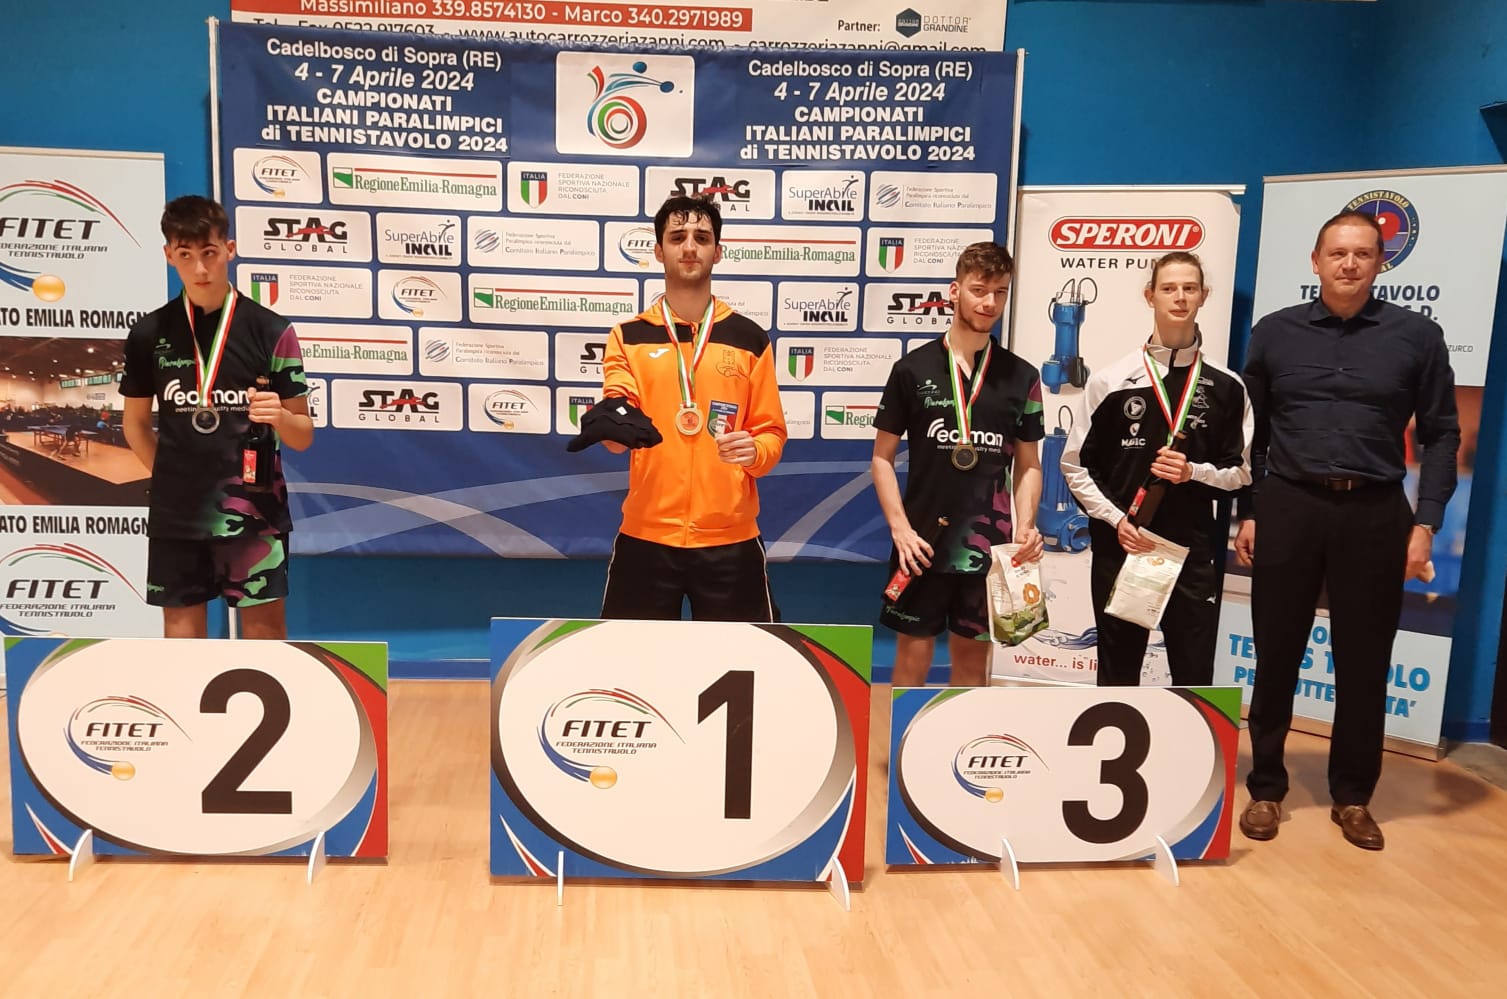 Campionati Italiani Paralimpici di Cadelbosco 2024 podio del singolare maschile giovanile di classe 6 10